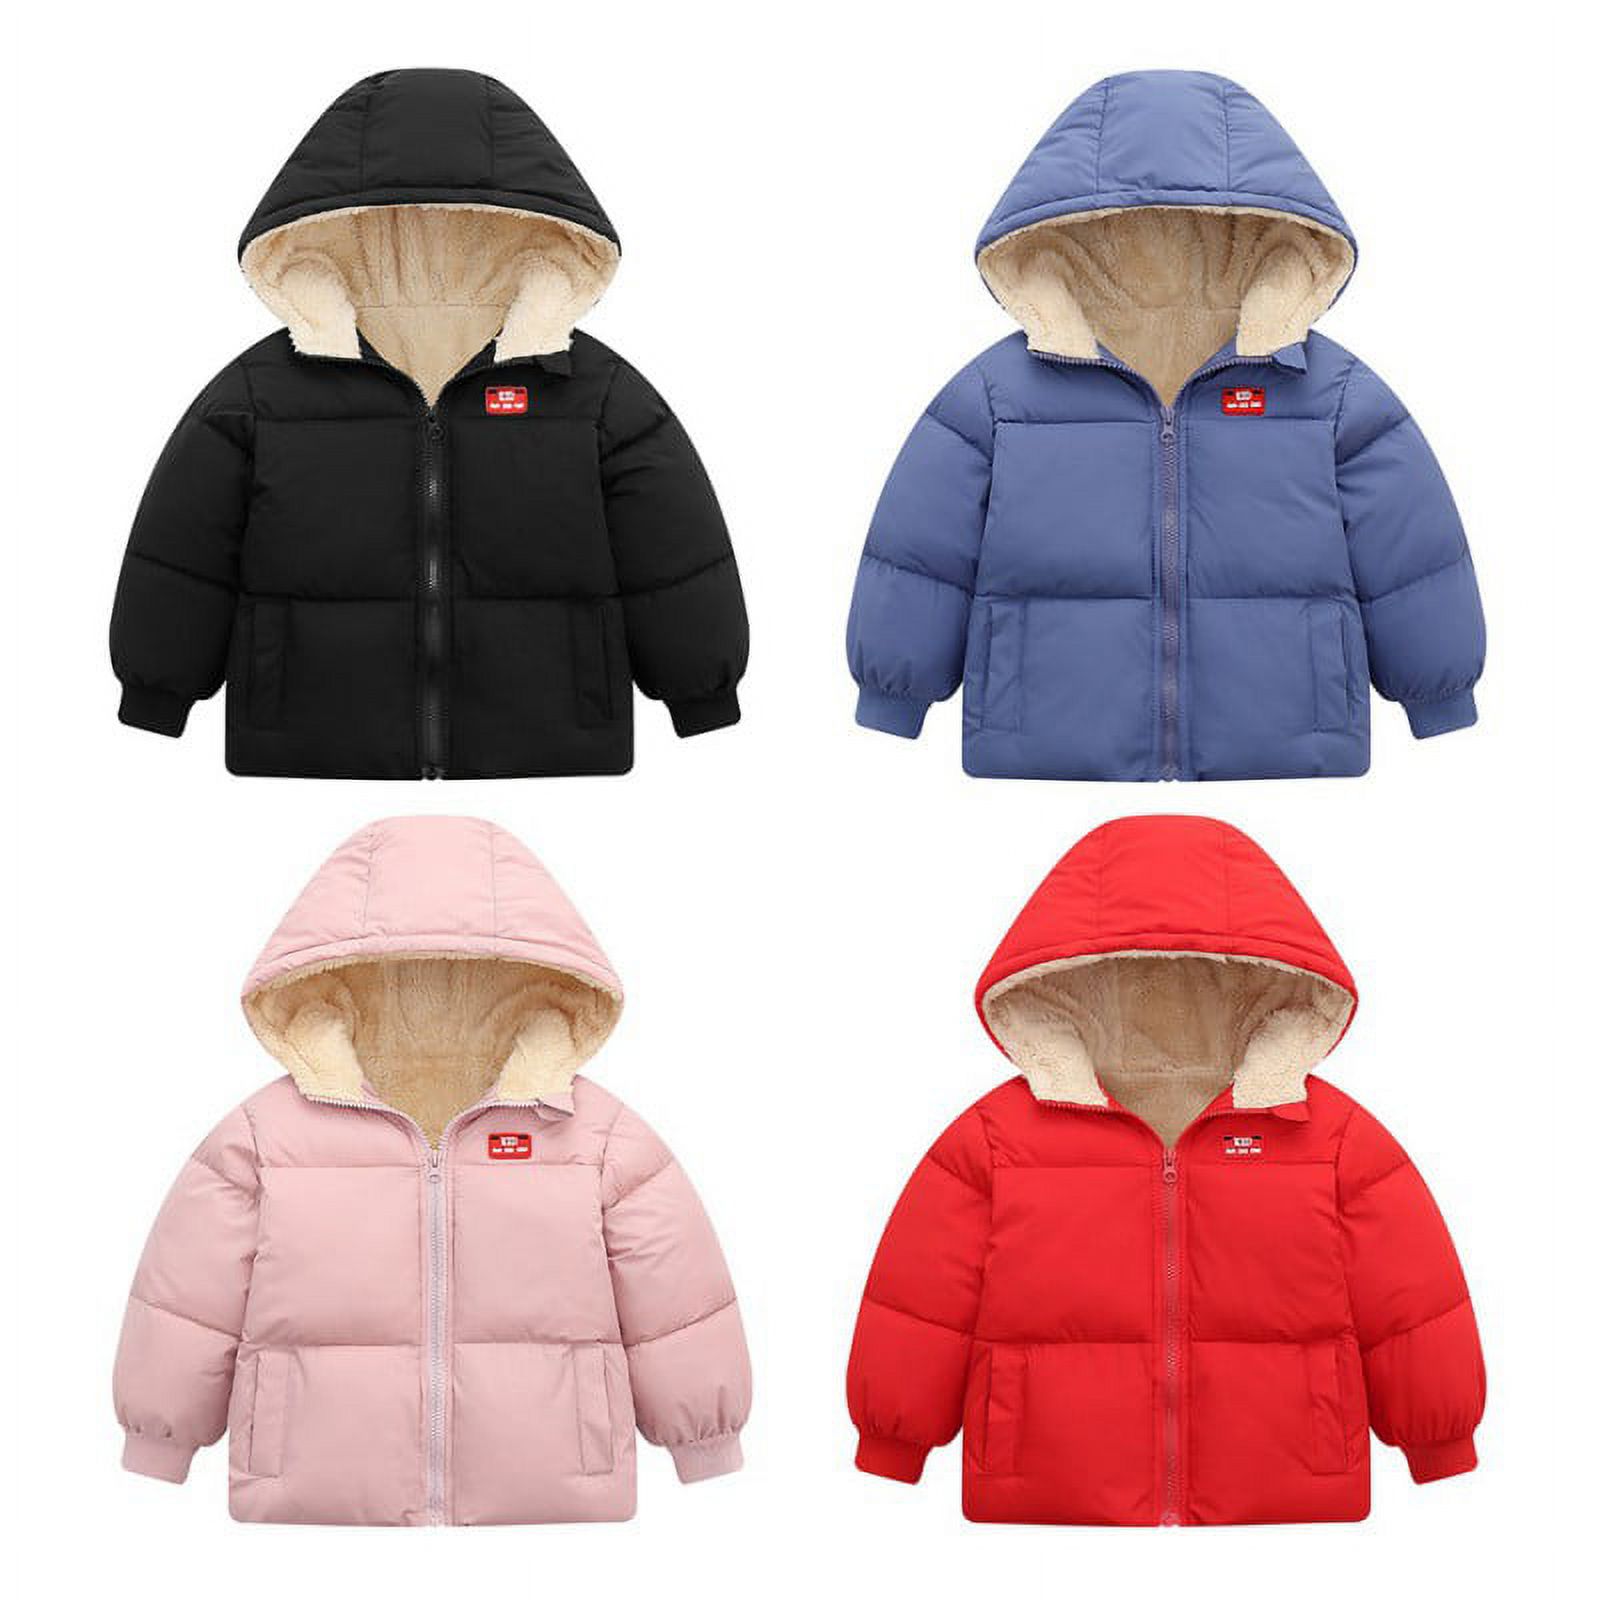 Boys Girls Hooded Down Jacket Winter Warm Fleece Coat Windproof Zipper Puffer Outerwear 18M-6T - image 5 of 5